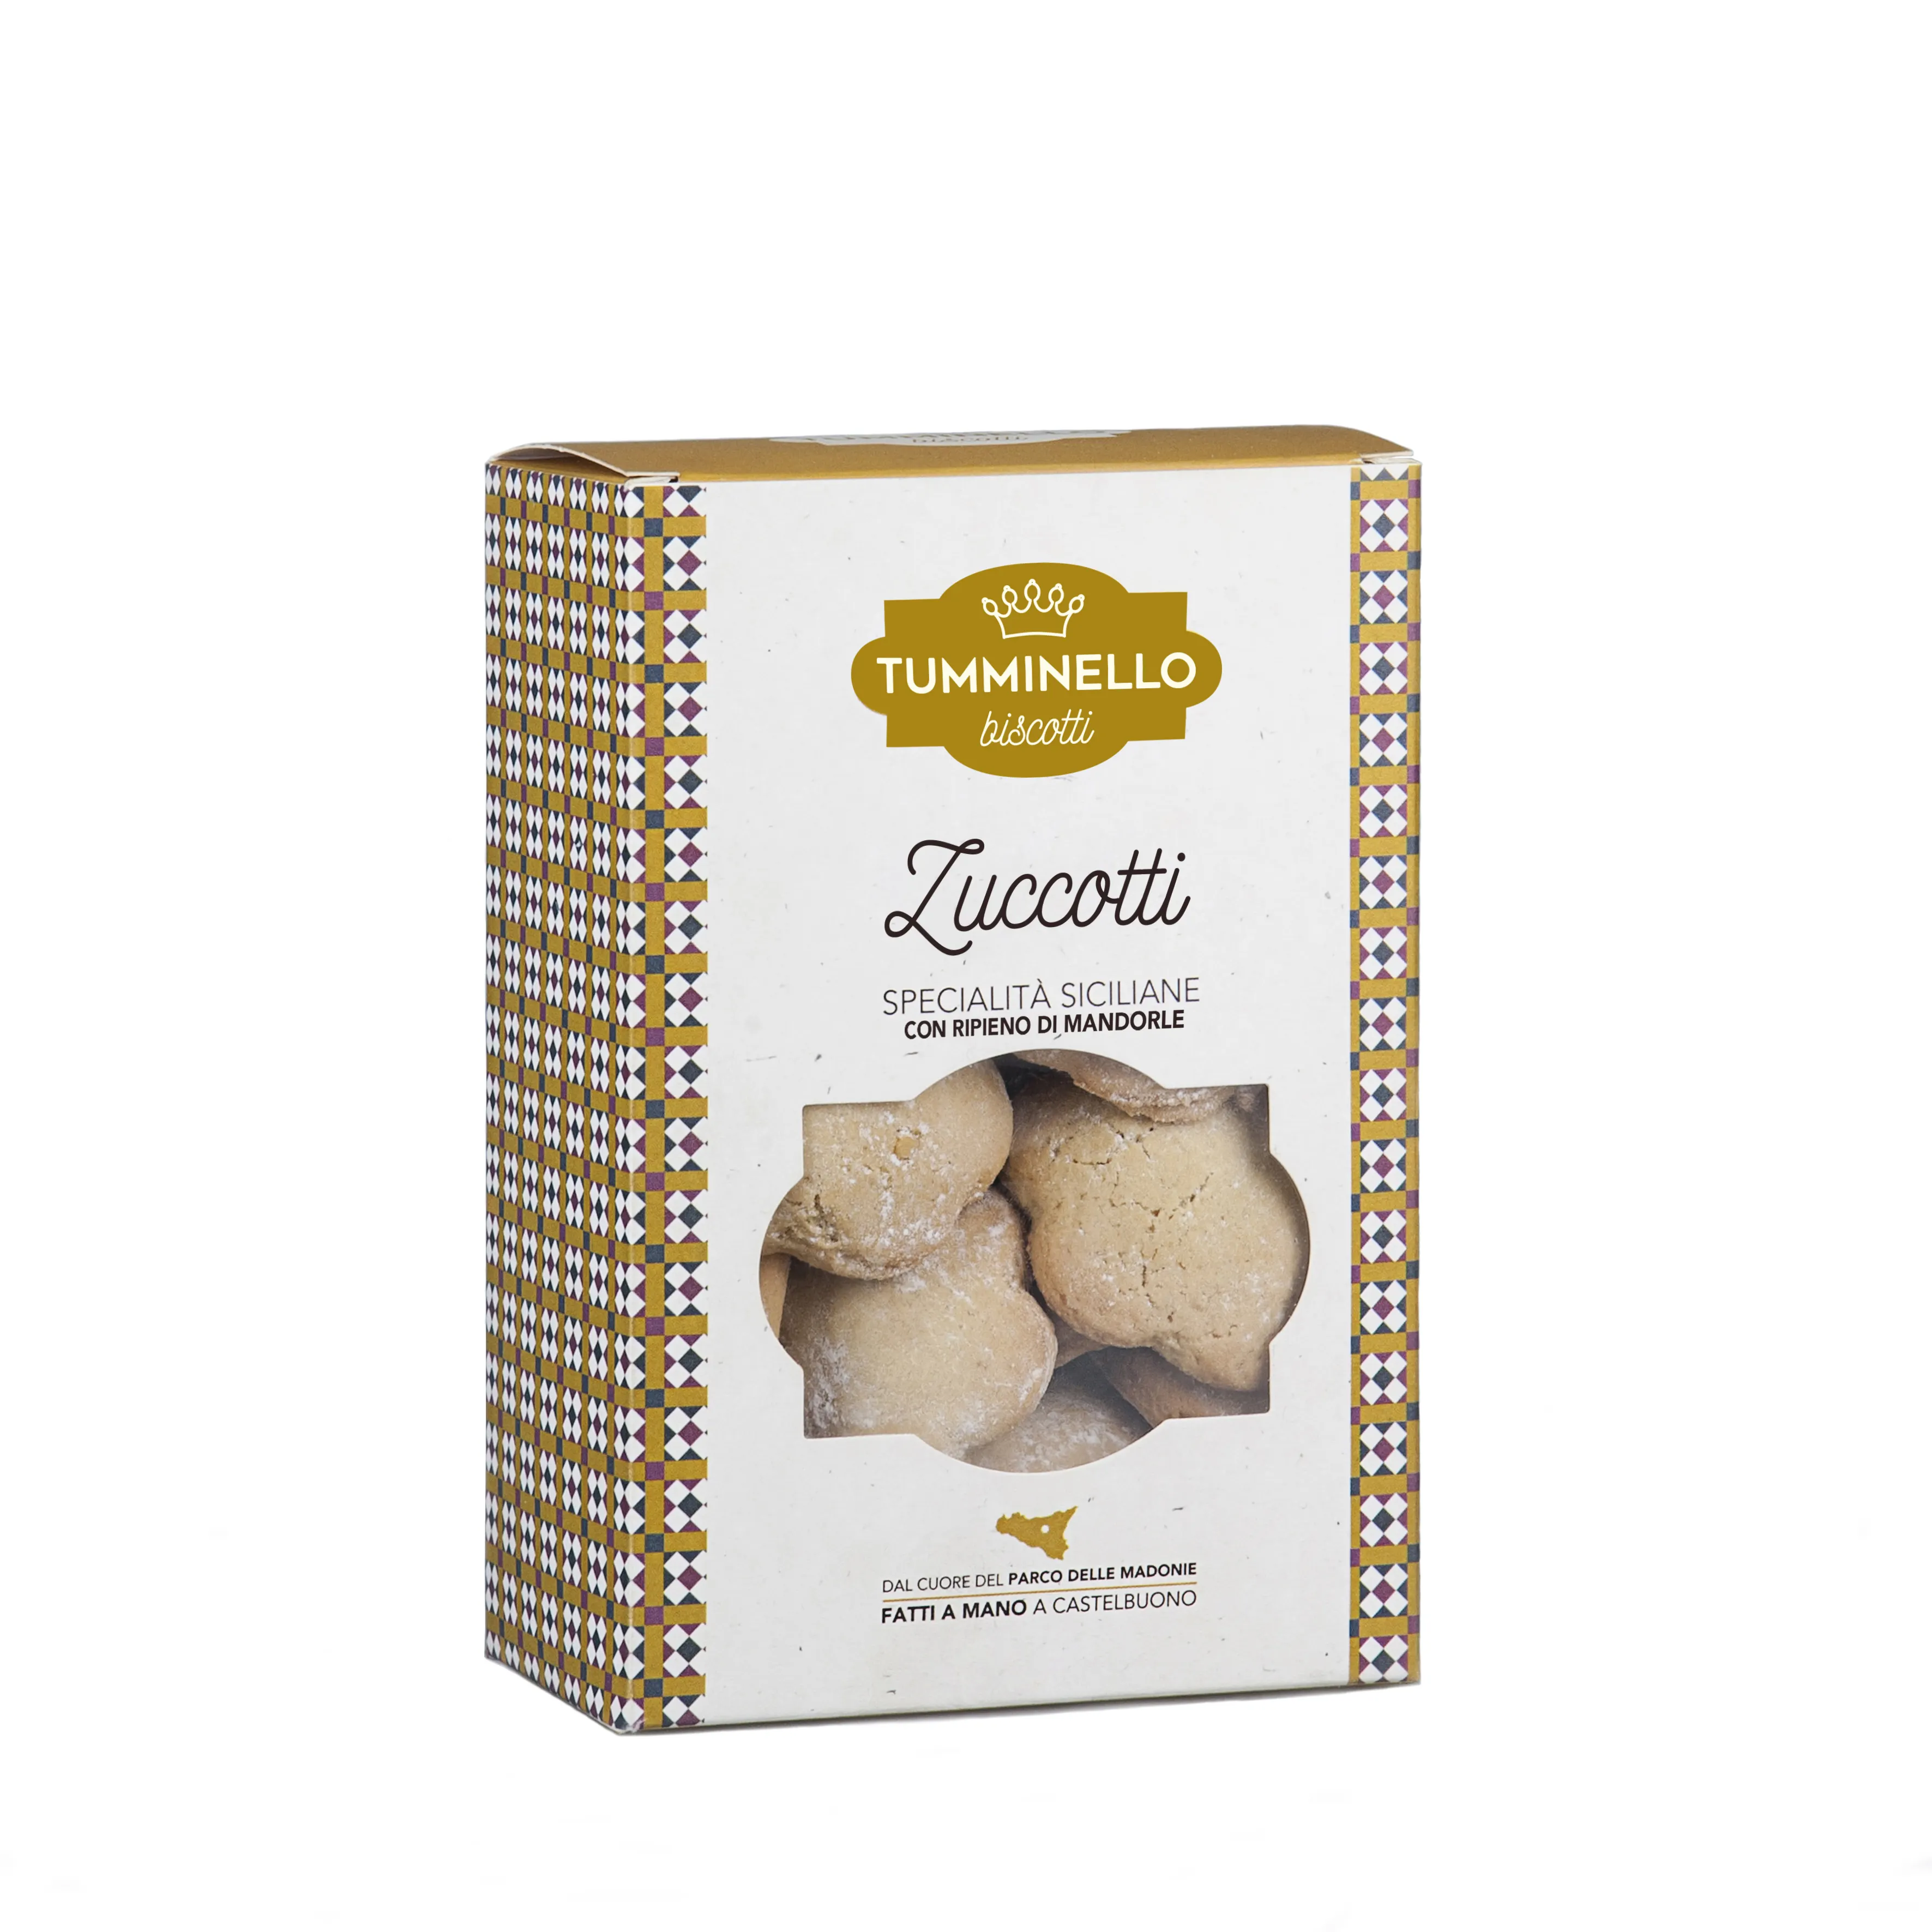 Biscotti fatti in italia 320g senza conservanti senza olio di palma senza agenti coloranti ingredienti naturali artigianali pasticcini di mandorle